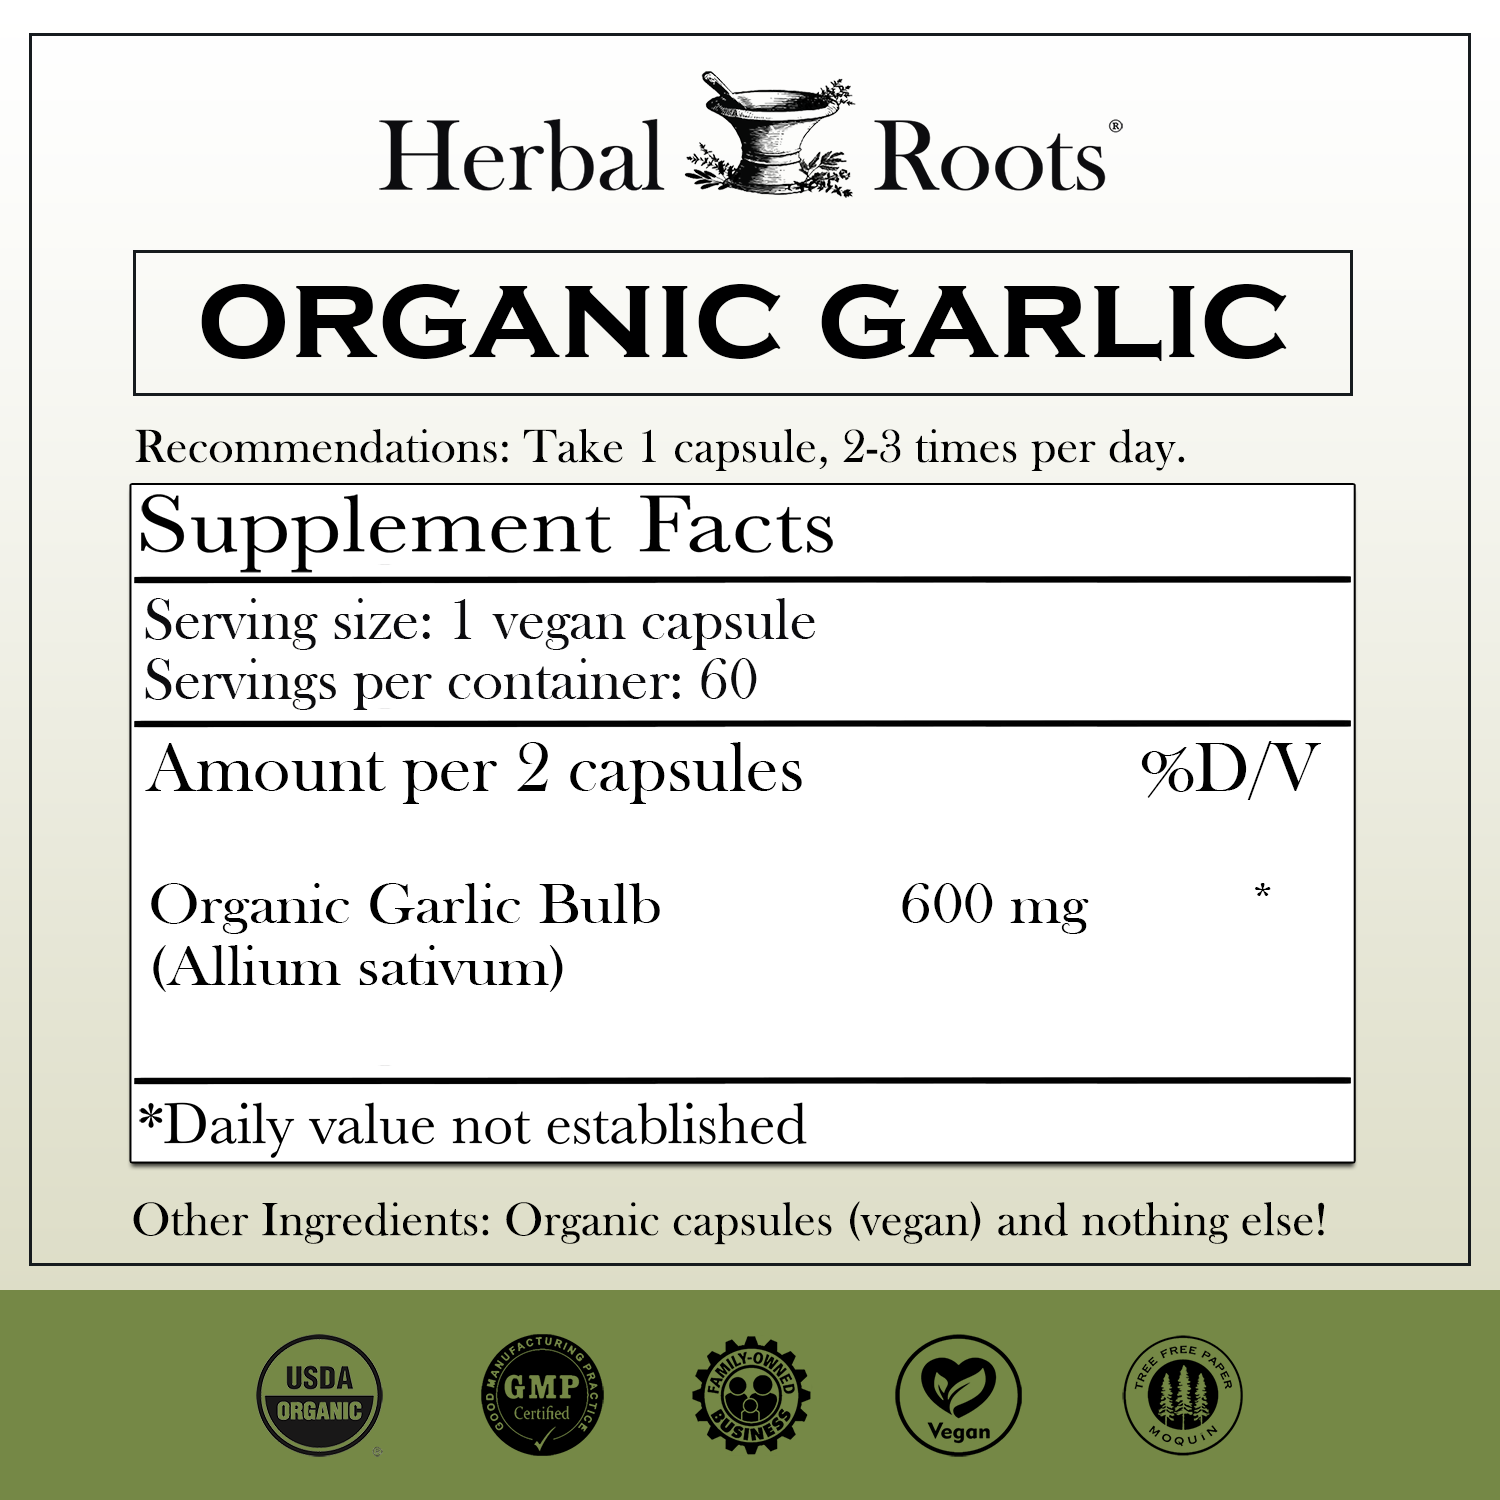 garlic supplement facts